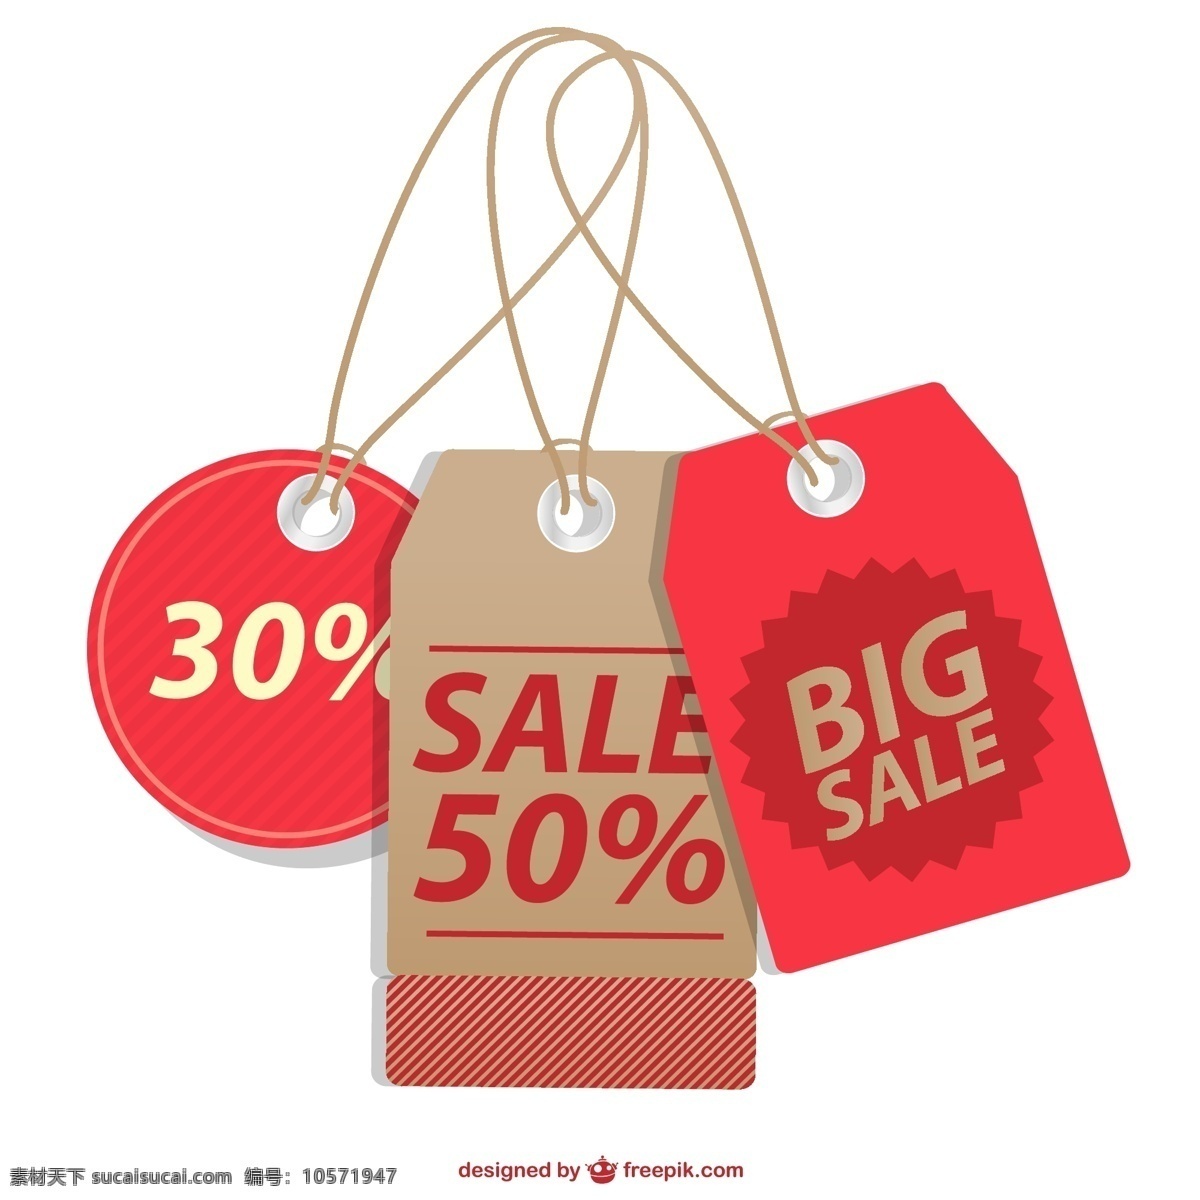 销售 价格 标签 收藏 购物 营销 红 店 图形 促销 广告 平面设计 提供 价格标签 元素 圆形 插图 白色